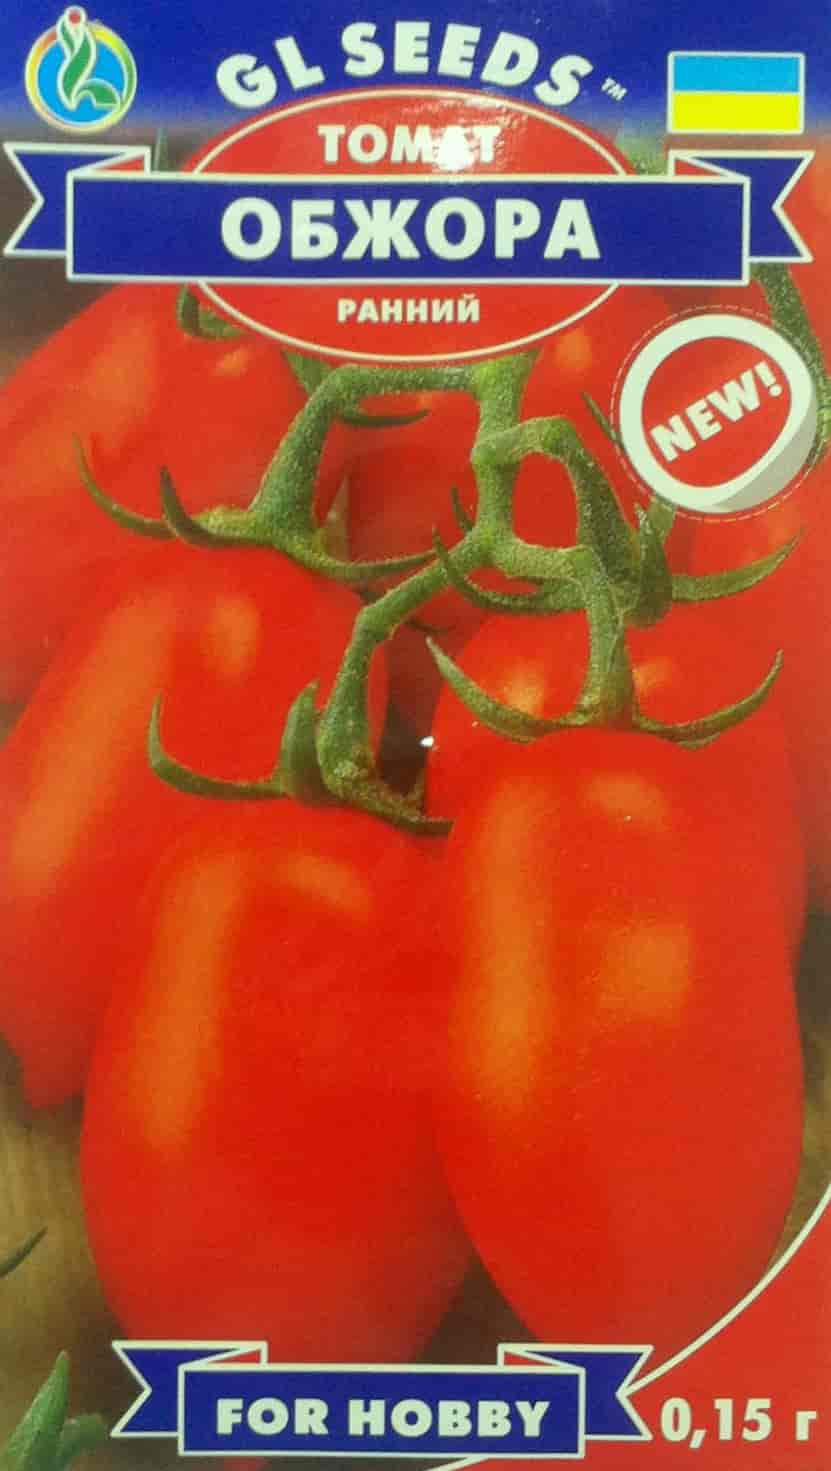 Обжорка помидоры описание сорта фото